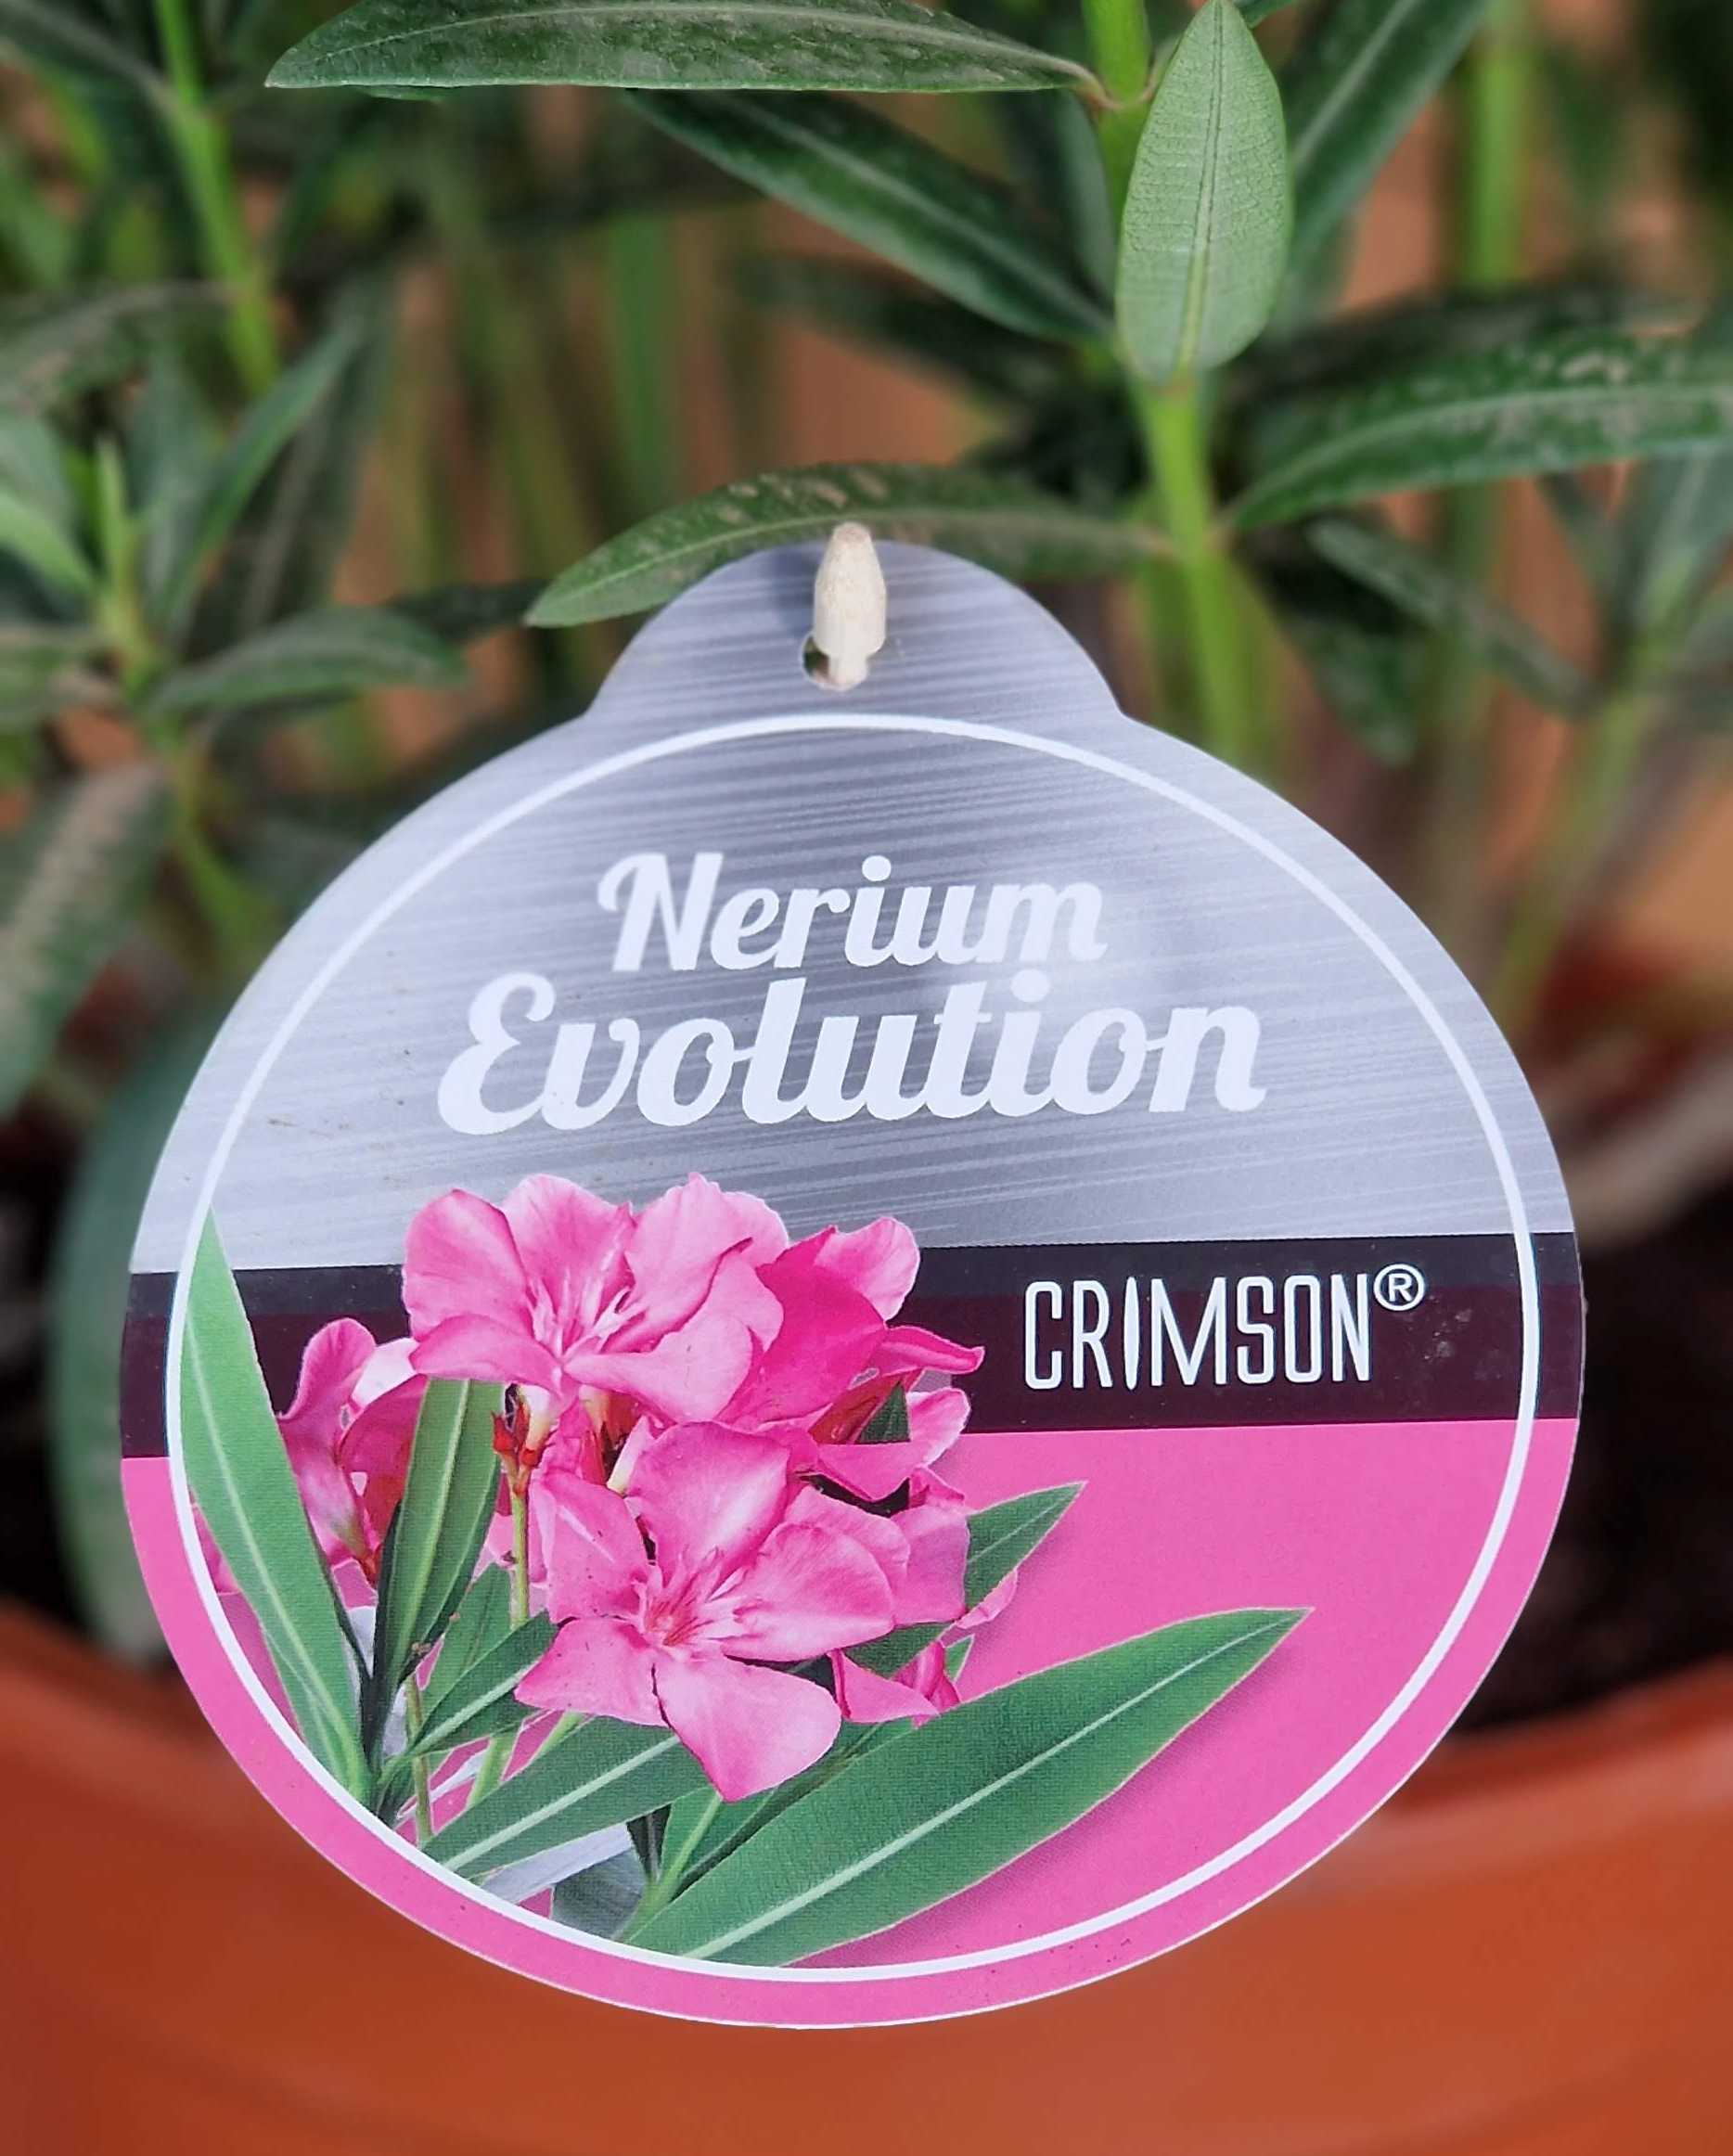 Rosa Oleander - Nerium Evolution "Crimson"